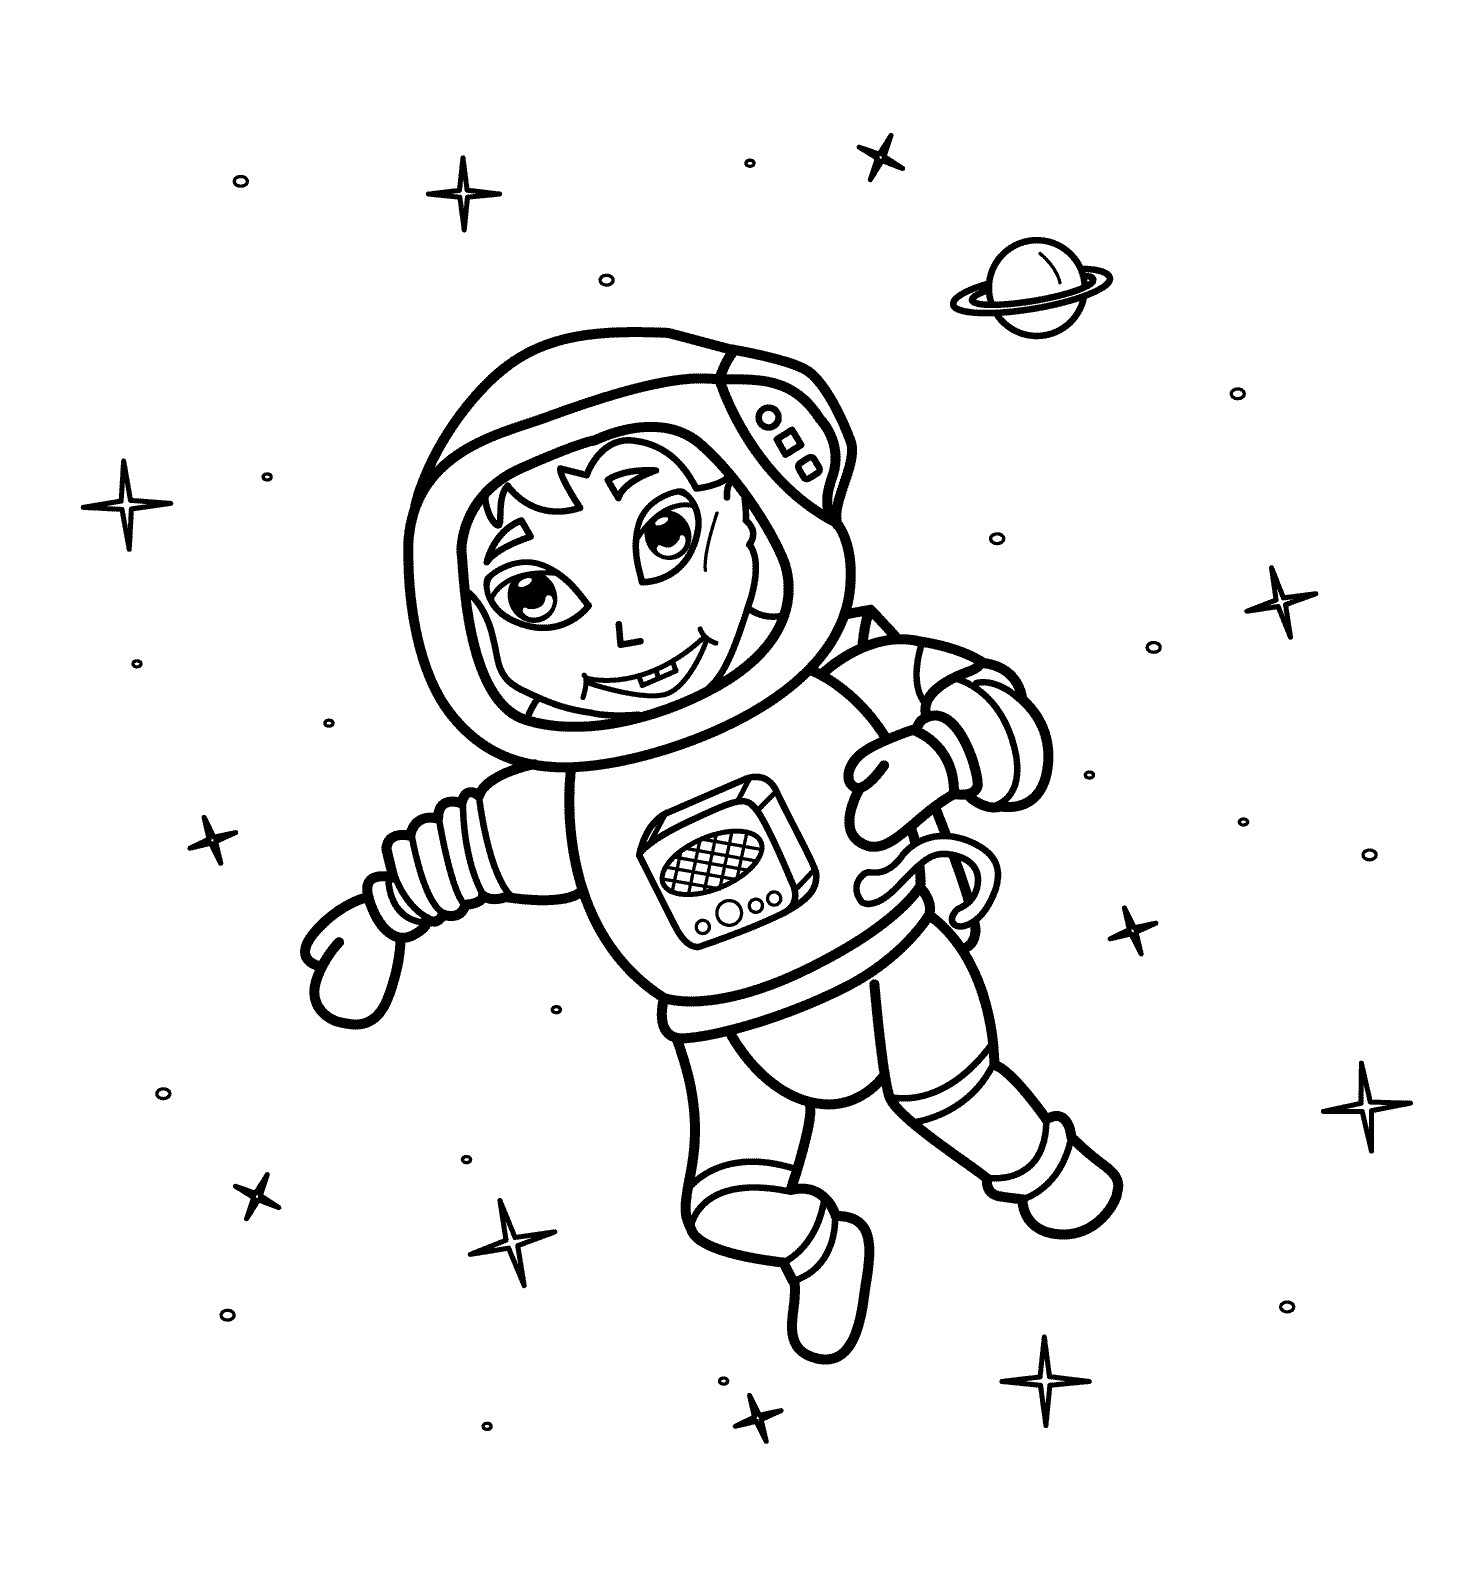 Рисунок на день космонавтики раскраска. Космонавт раскраска для детей. Космос раскраска для детей. Раскраска про космос и Космонавтов для детей. Космонавт для раскрашивания для детей.